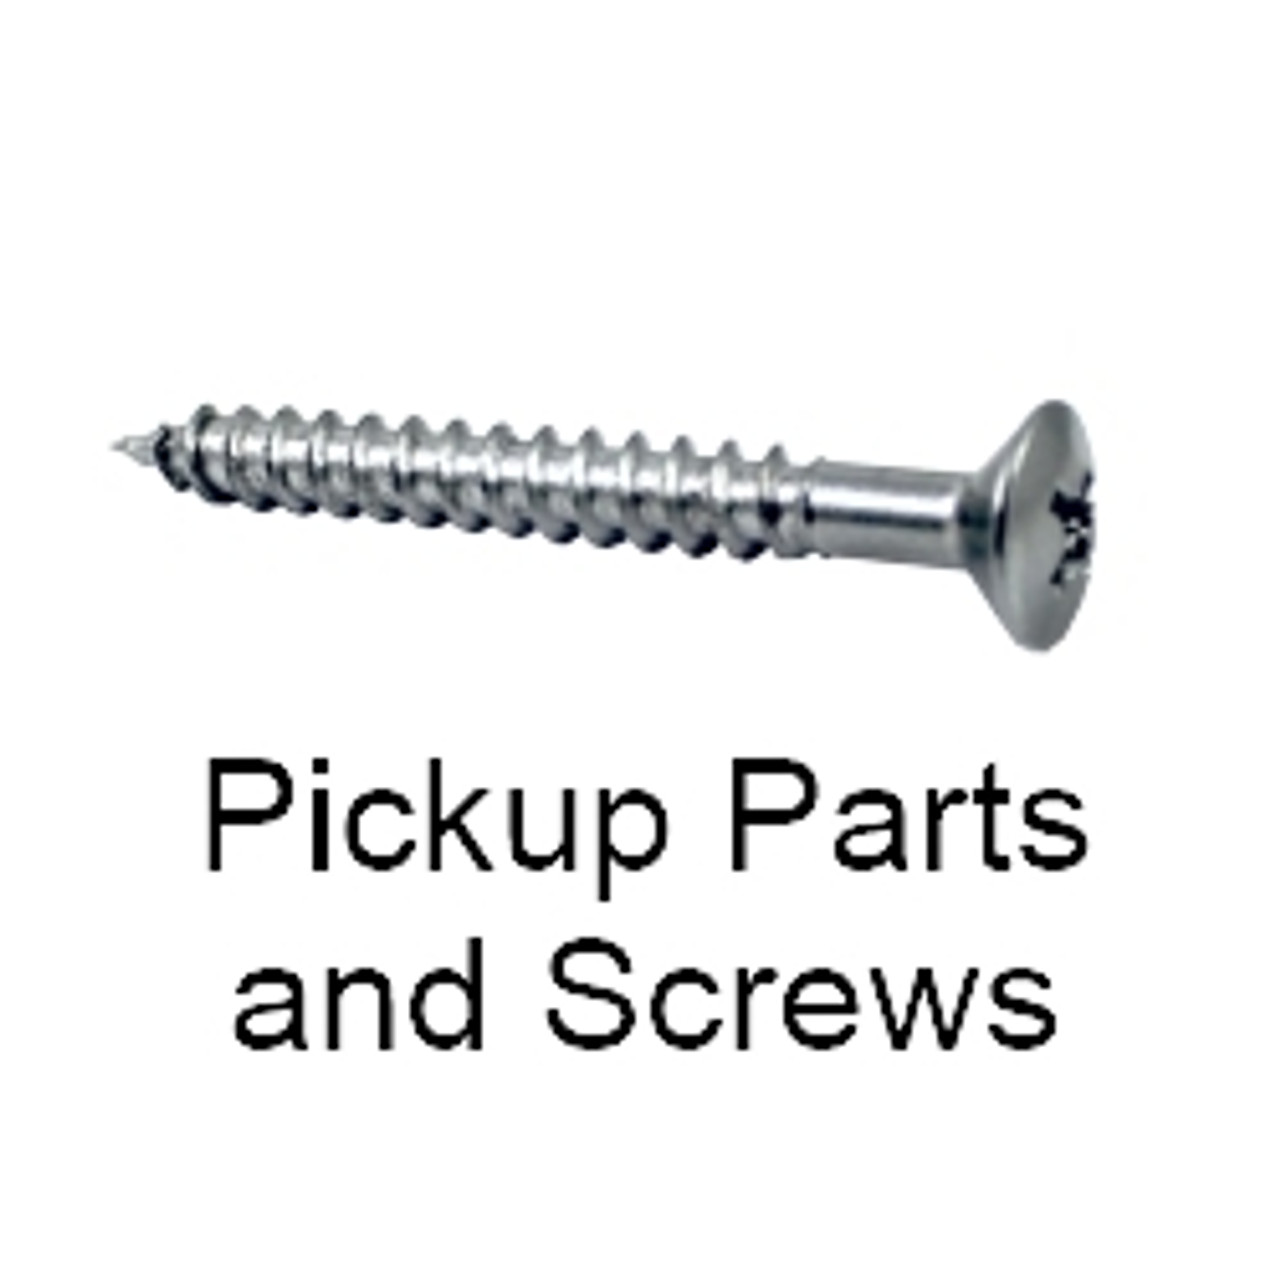 Mounting screws